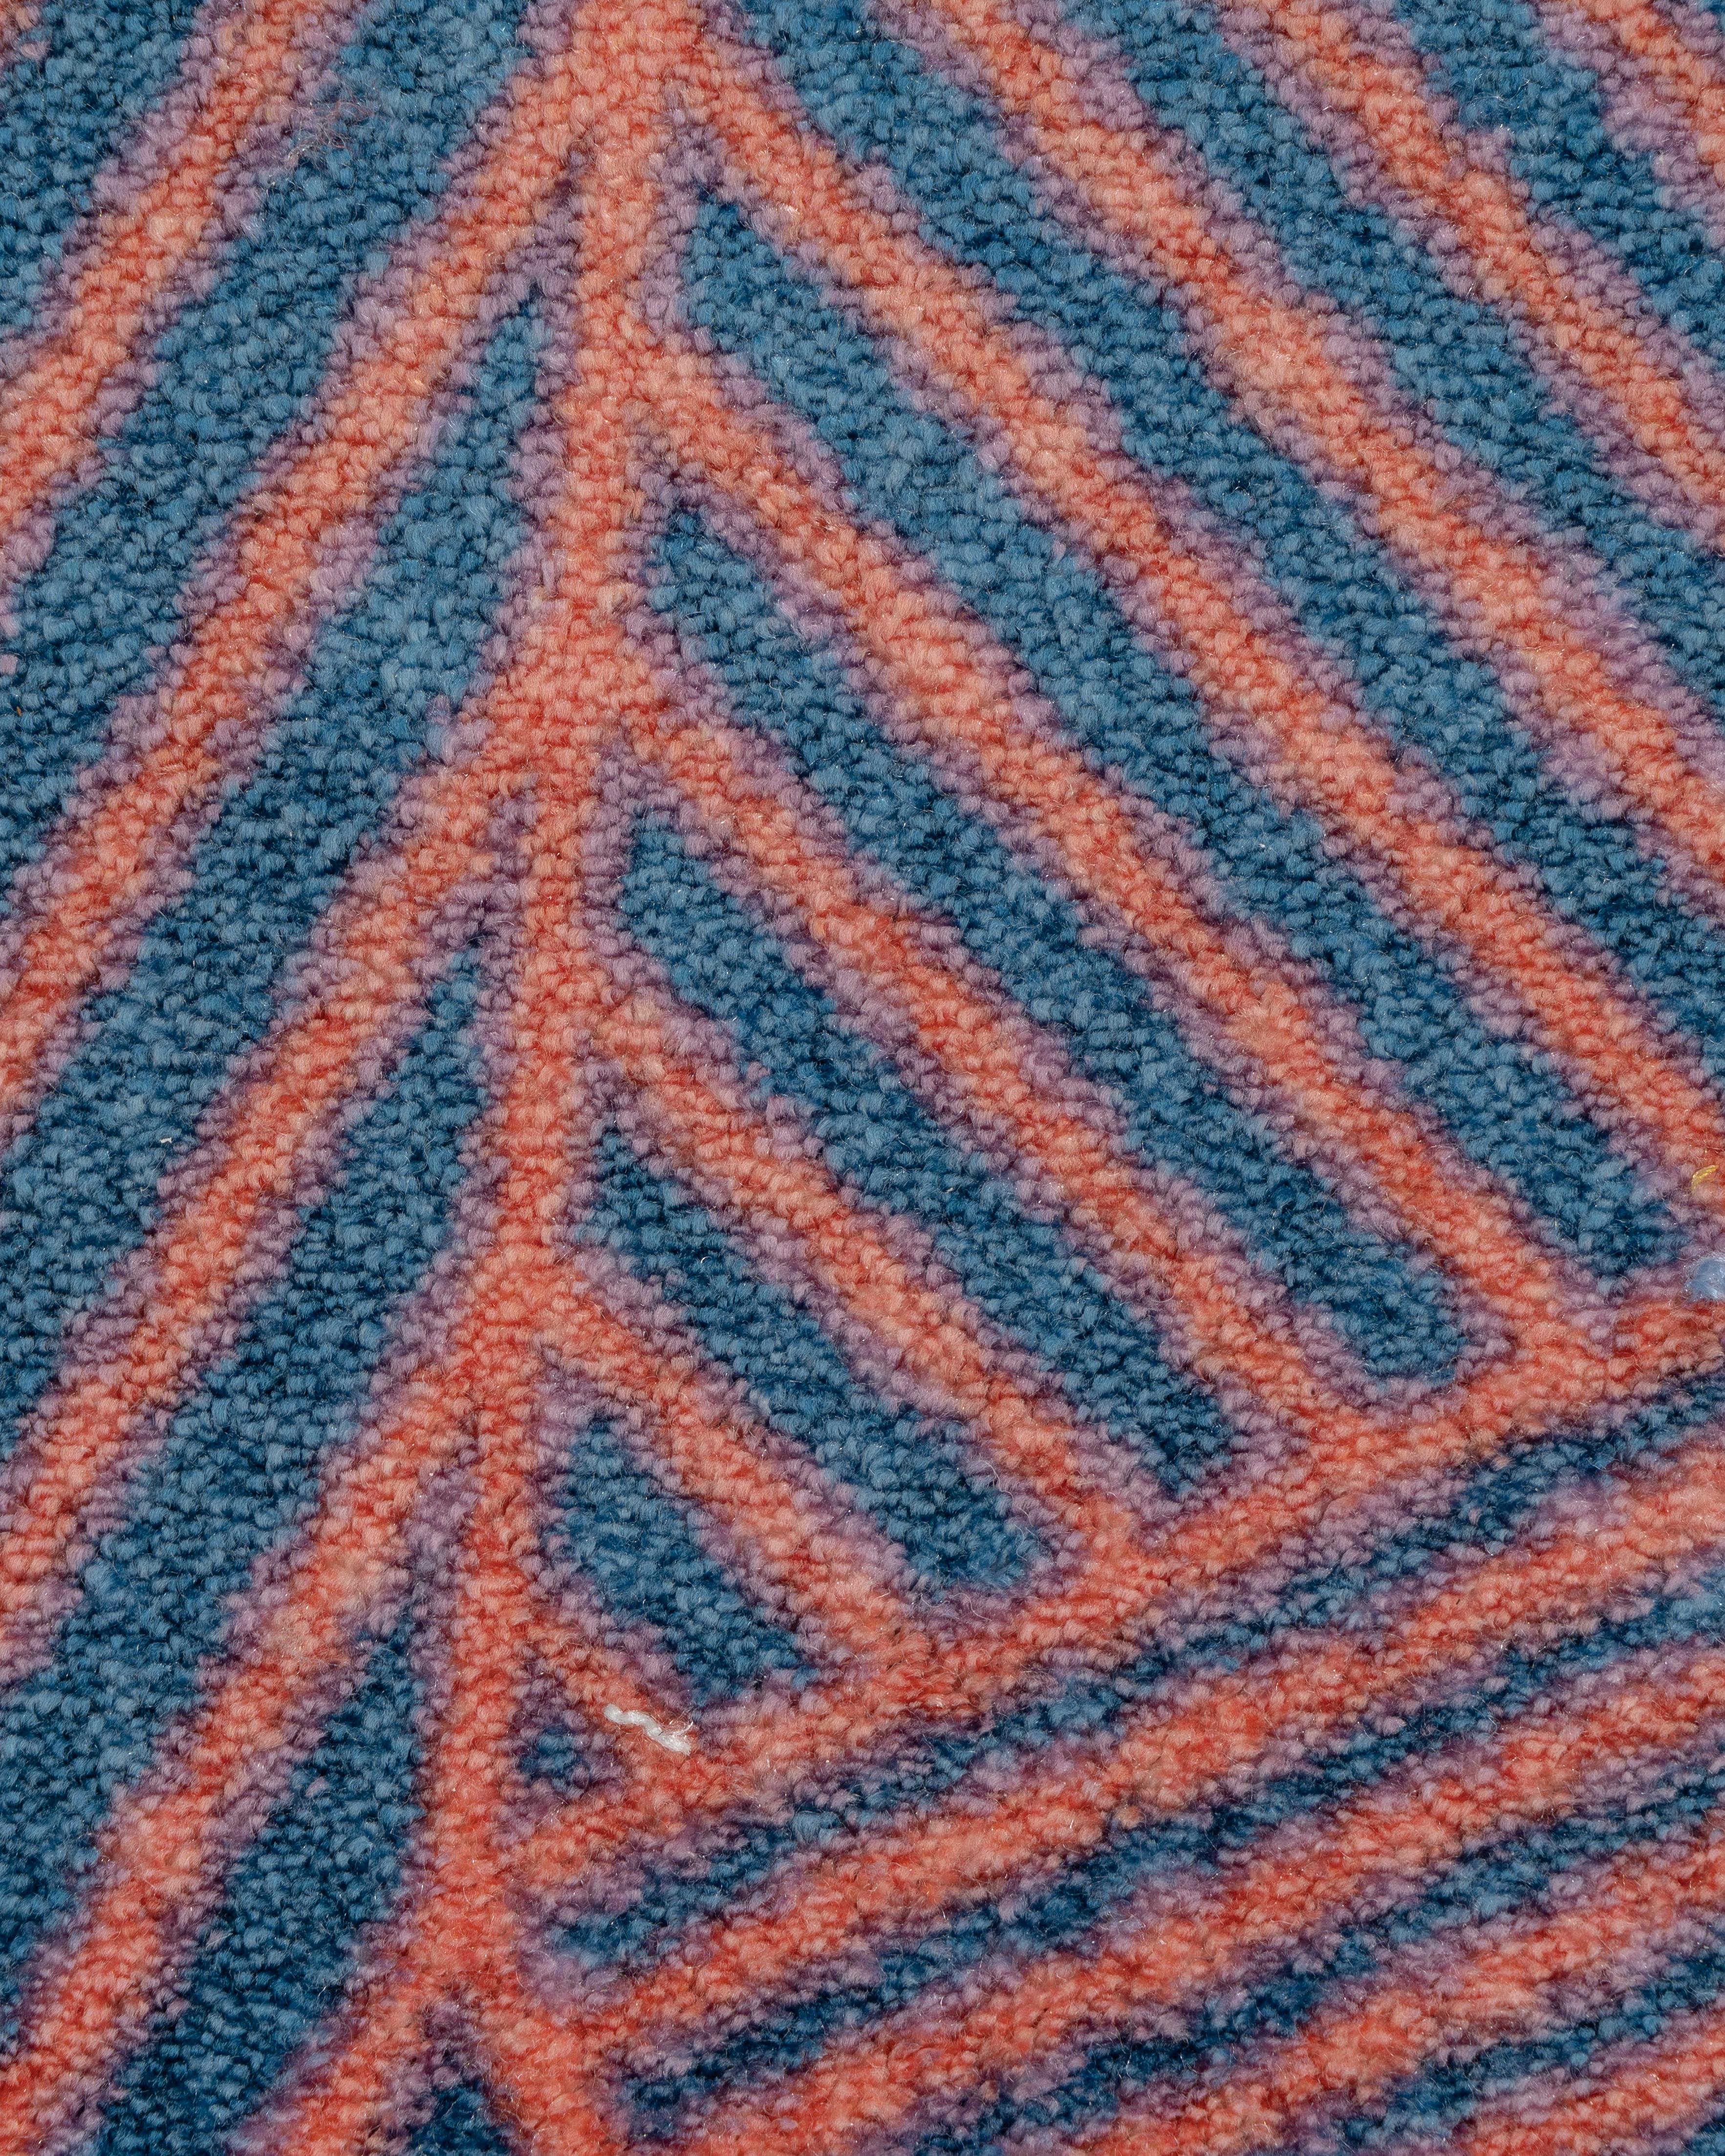 AlTappeto est la nouvelle collection de tapis conçue par Enrico Girotti pour LapiegaWD et Furnigible.
De minuscules traits qui se fondent dans des couleurs dégradées, remplissent toute la forme du tapis d'une forme inhabituelle.
AlTappeto (178 cm